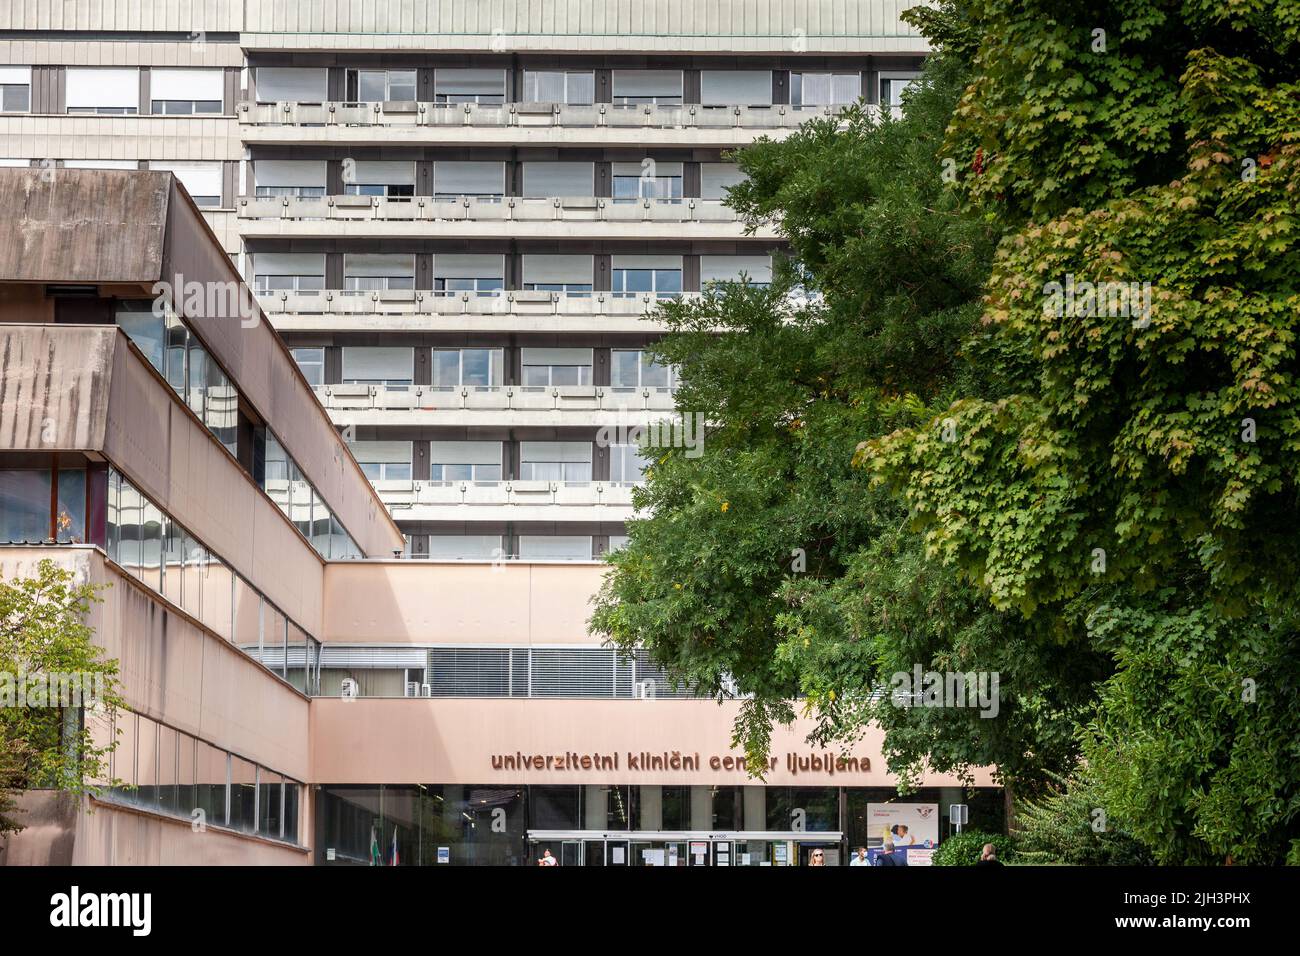 Bild des wichtigsten slowenischen Krankenhaus, universitetni klinicki centar ljubljana, der Universität klinischen Zentrum, Zith einen Schwerpunkt auf seinen Eingang und seine Stockfoto